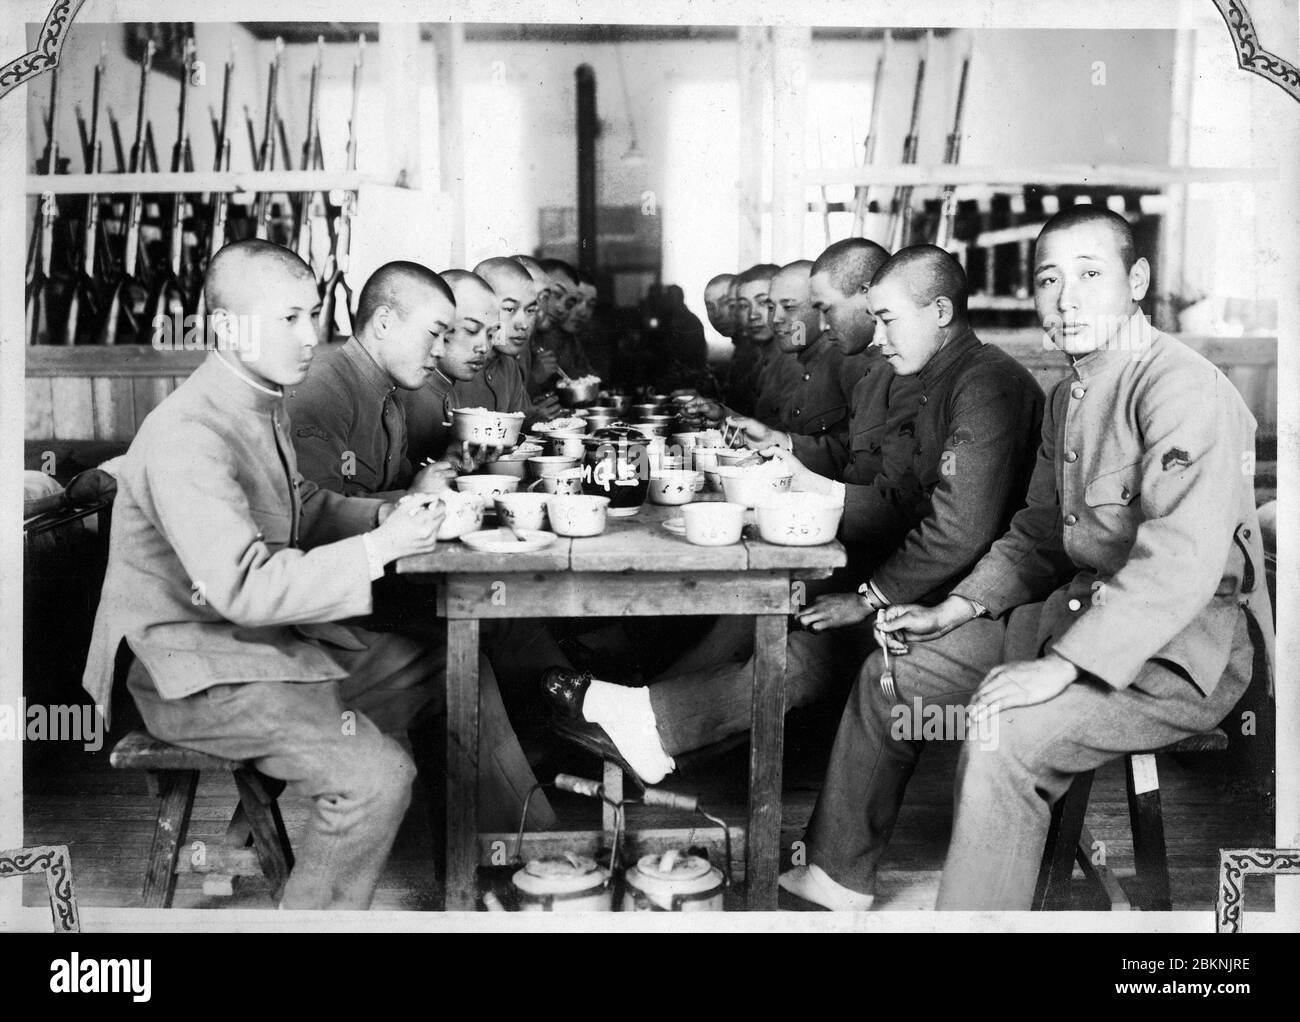 [ Japan der 1920er Jahre - Japanische Kaisergarde ] - Soldaten beim Essen. Aus einem privaten Fotoalbum eines Mitglieds der japanischen Kaisergarde (近衛師団, Konoe Shidan), der zwischen 1928 (Showa 3) und 1930 (Showa 5) diente. Silberdruck mit Gelatine aus dem 20. Jahrhundert. Stockfoto